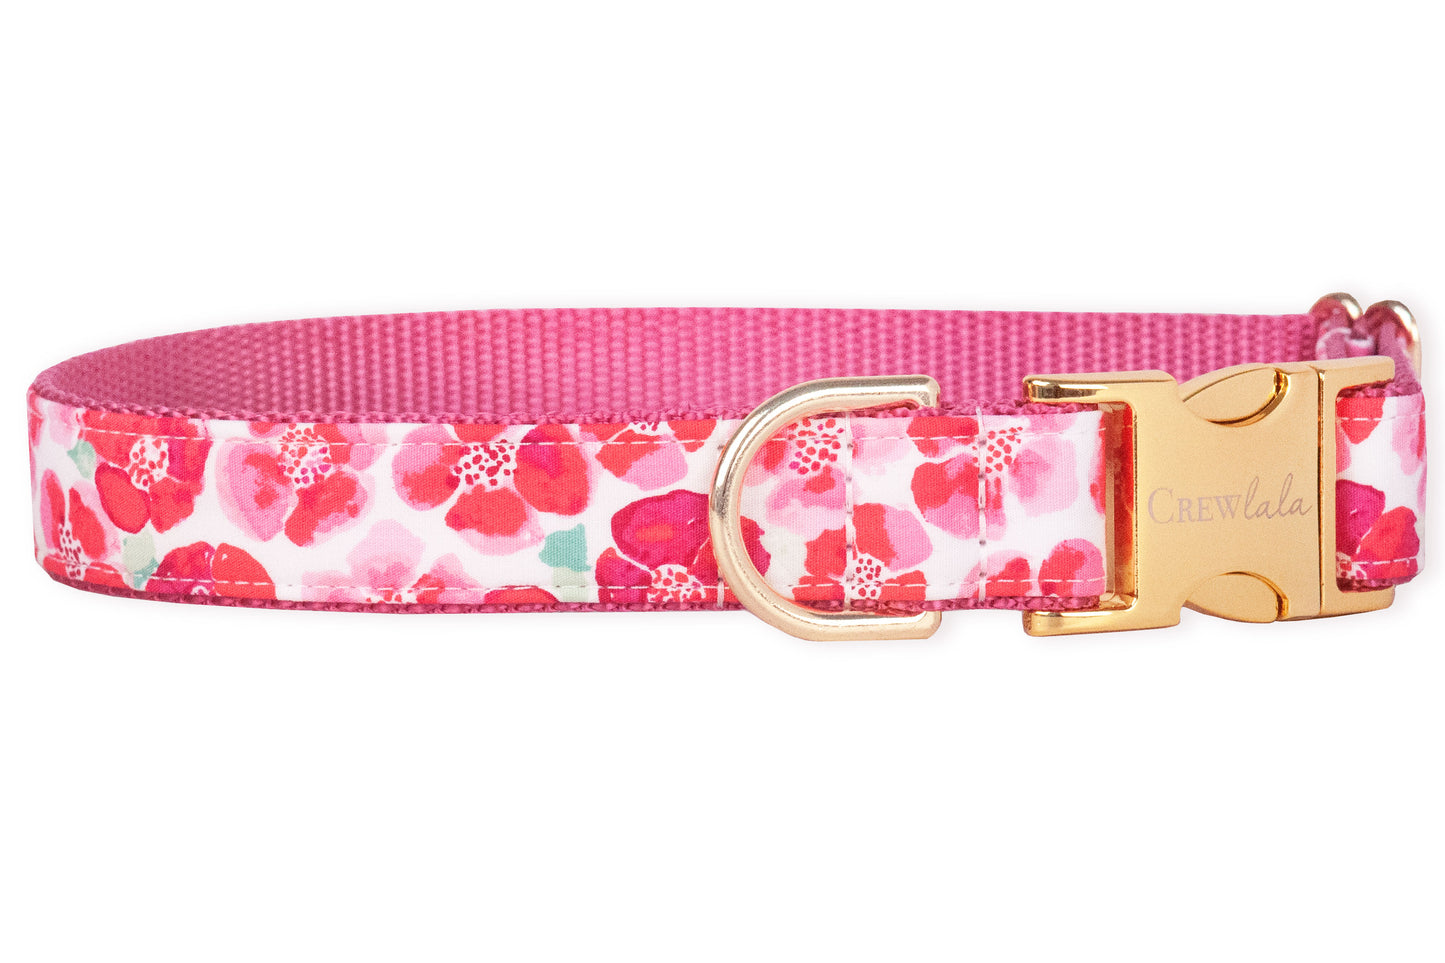 Pink Primrose Belle Bow Dog Collar - Crew LaLa